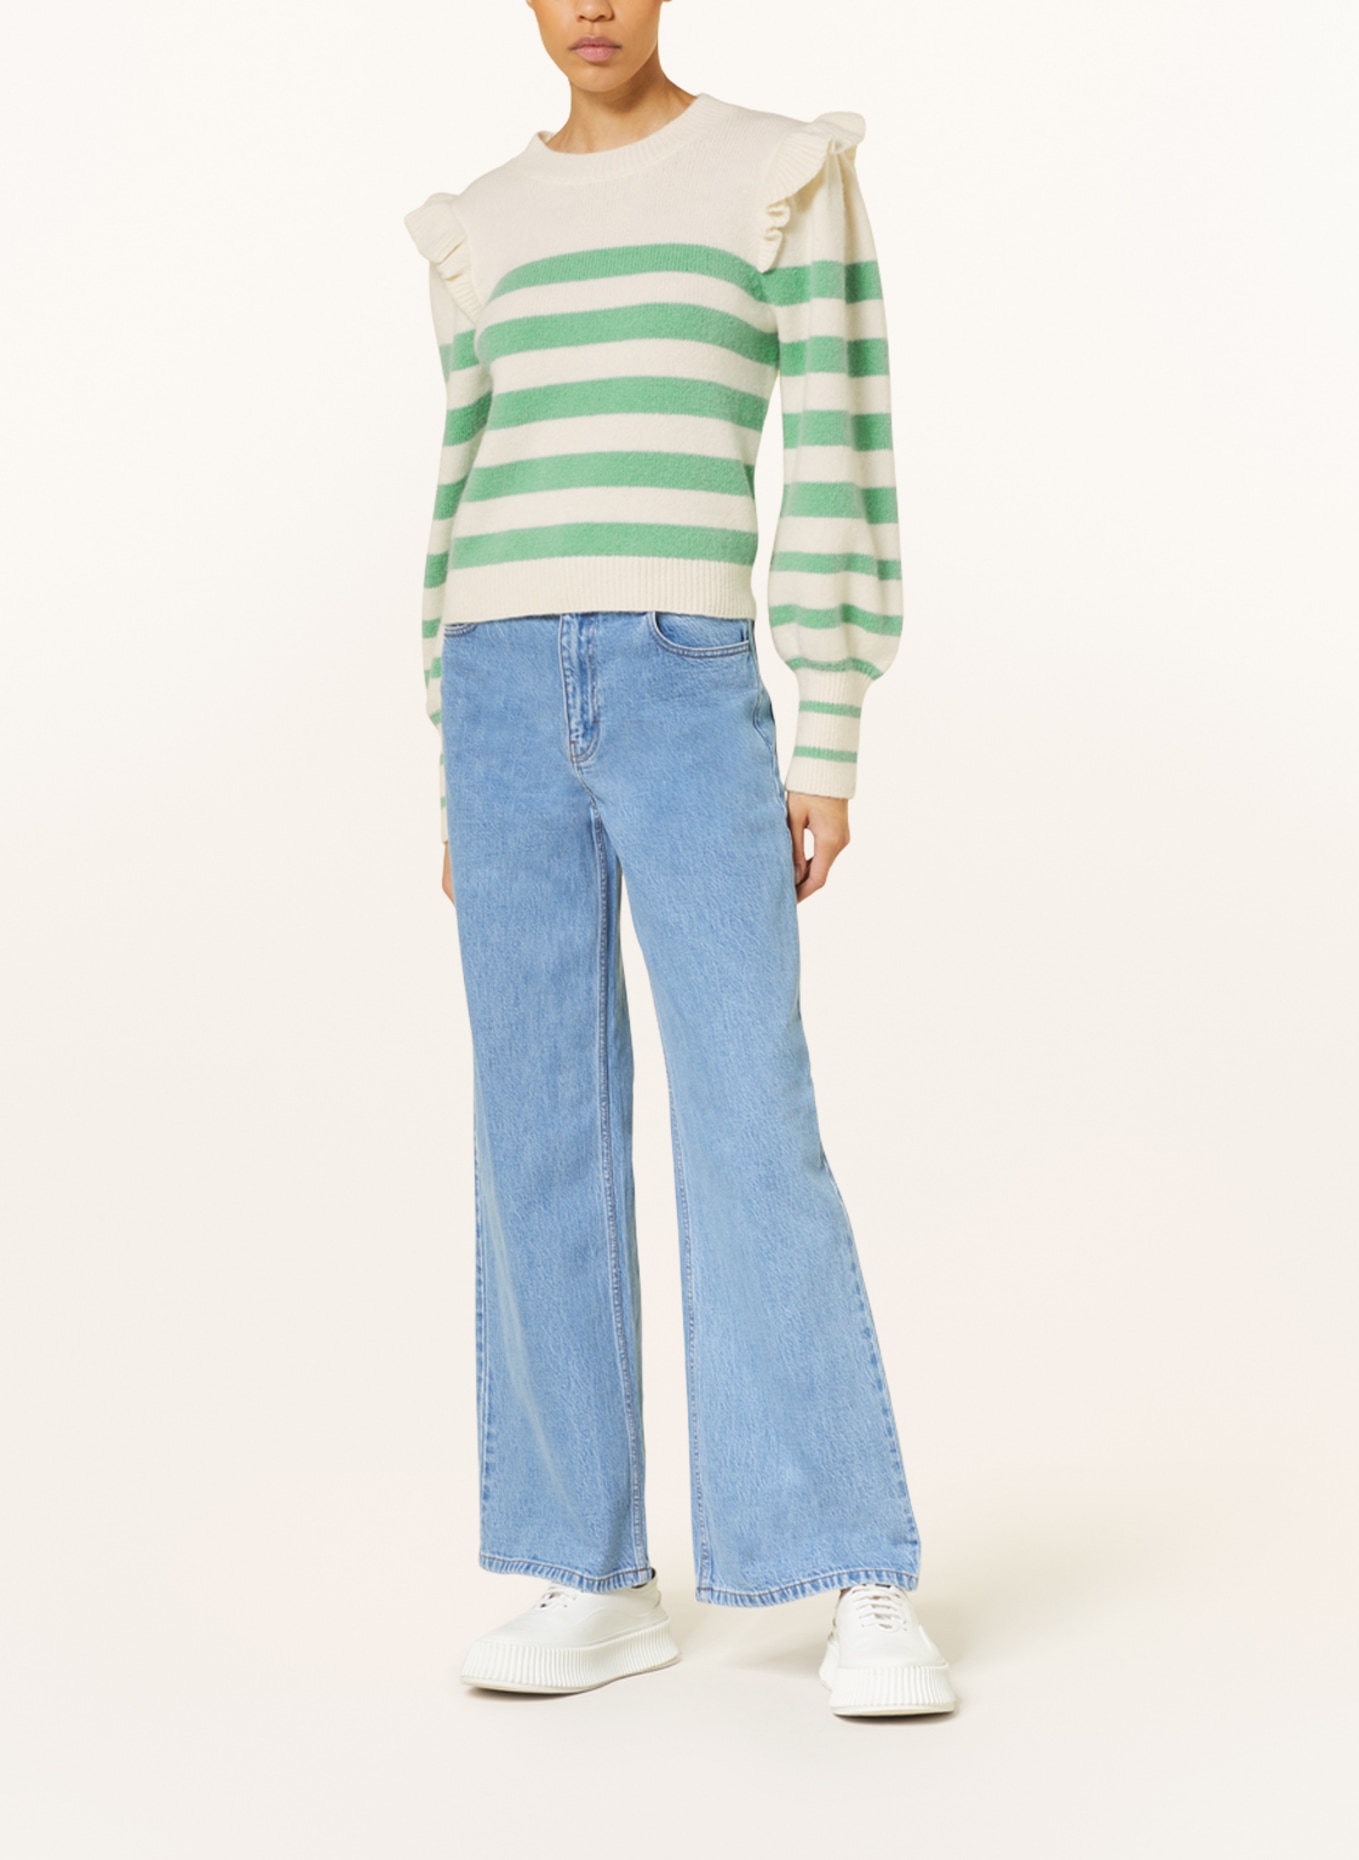 BAUM UND PFERDGARTEN Sweater CAMRYN with frills, Color: ECRU/ LIGHT GREEN (Image 2)